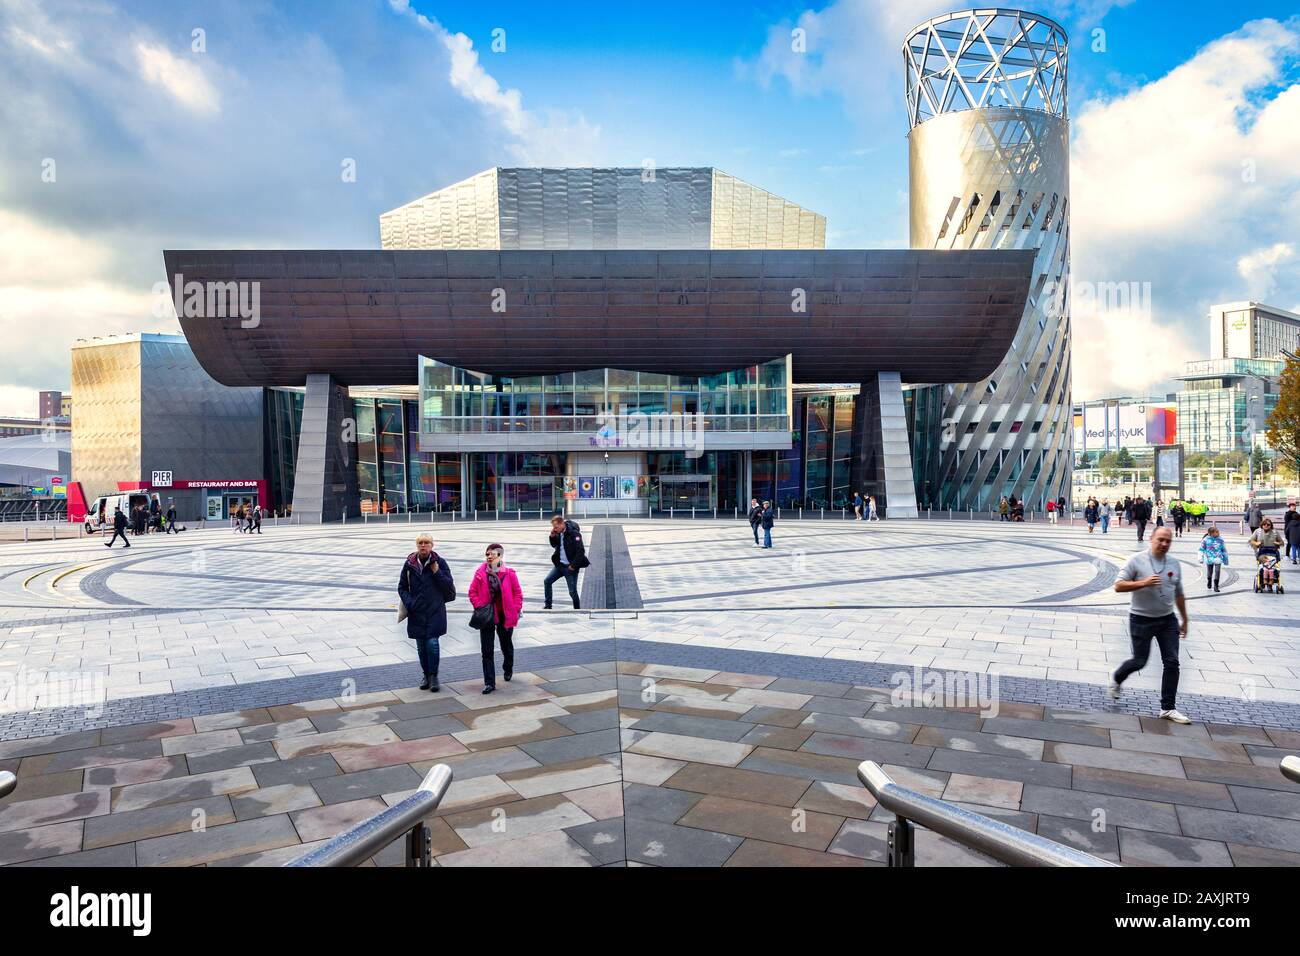 2 novembre 2018: Salford Quays, Manchester, Regno Unito - The Lowry, il complesso di gallerie e musei che celebra la vita di L.S. Lowry. È stato progettato da Jam Foto Stock